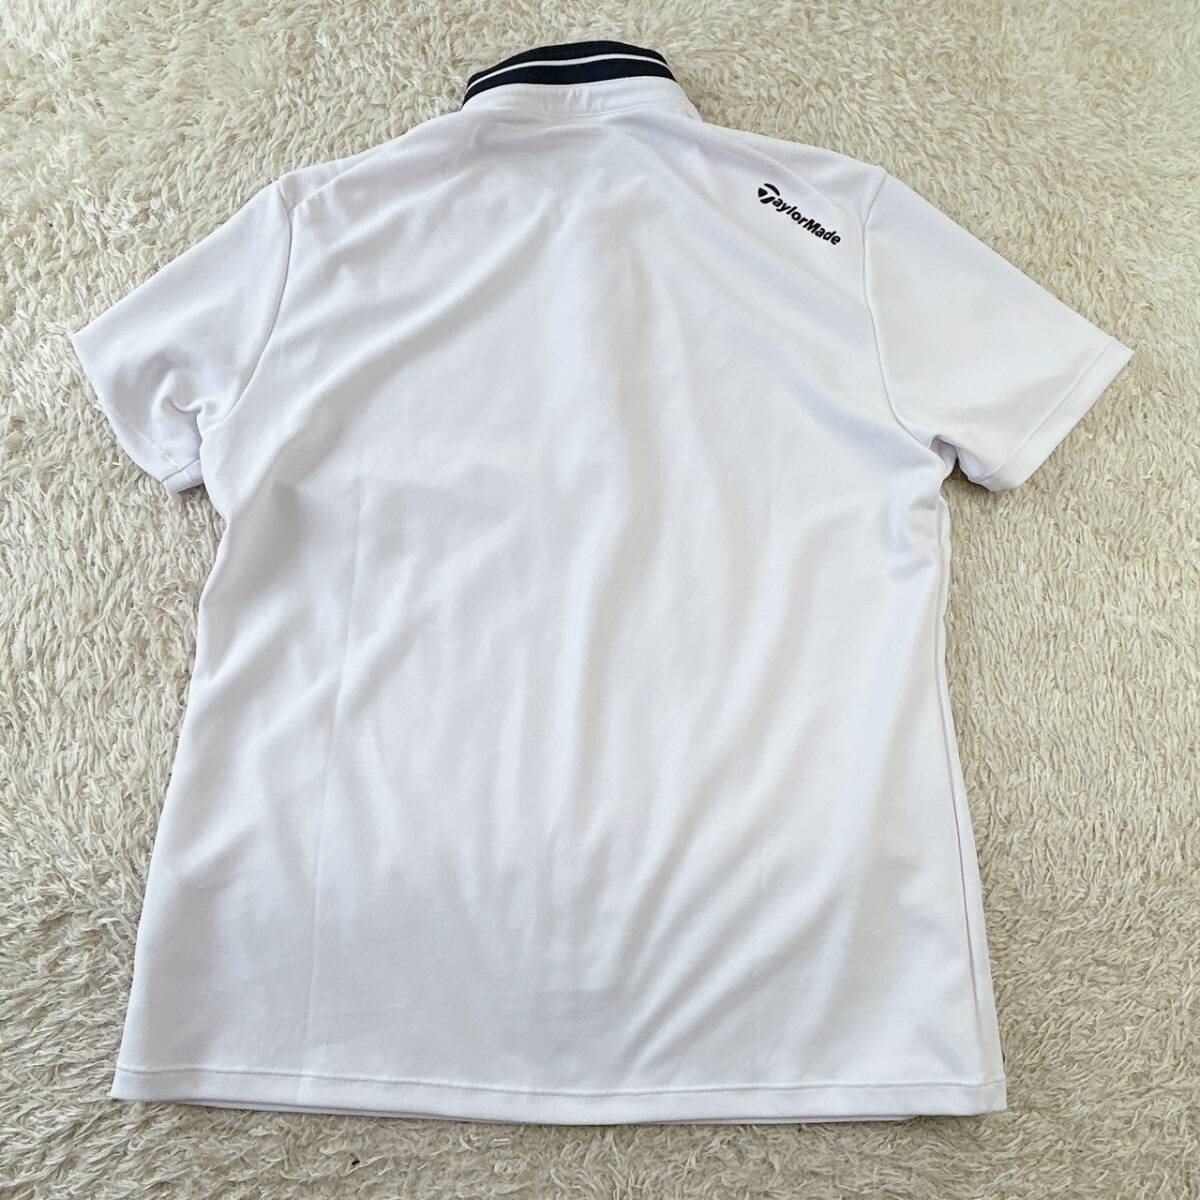 [Taylor Made] TaylorMade рубашка-поло с коротким рукавом Golf одежда .... ощущение оттенок белого мужской M кнопка-застежка .. скорость .Rstore443010